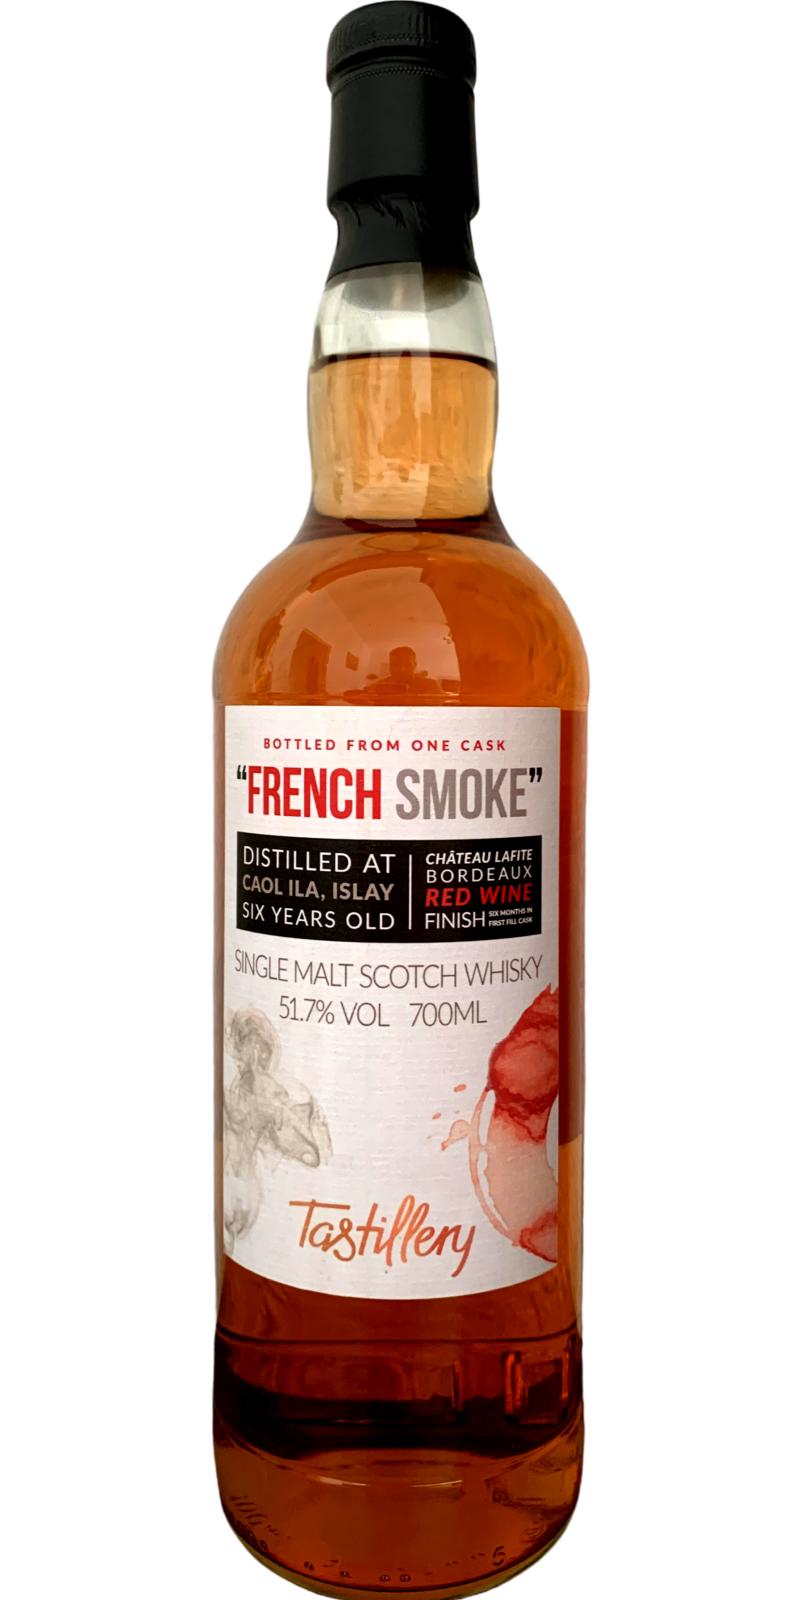 Caol Ila 2014 Tast French Smoke 51.7% 700ml